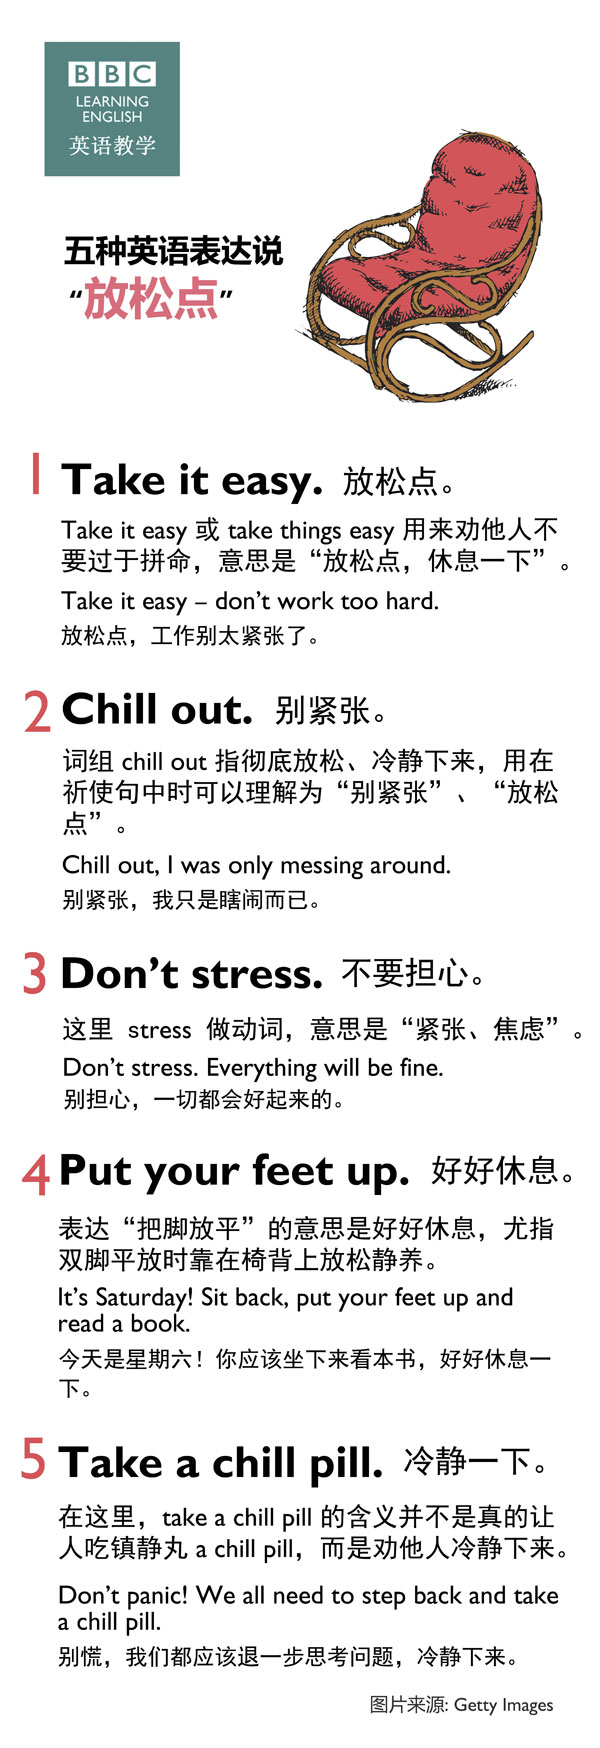 高强度工作或学习后需要放松 学习五种“放松”英语